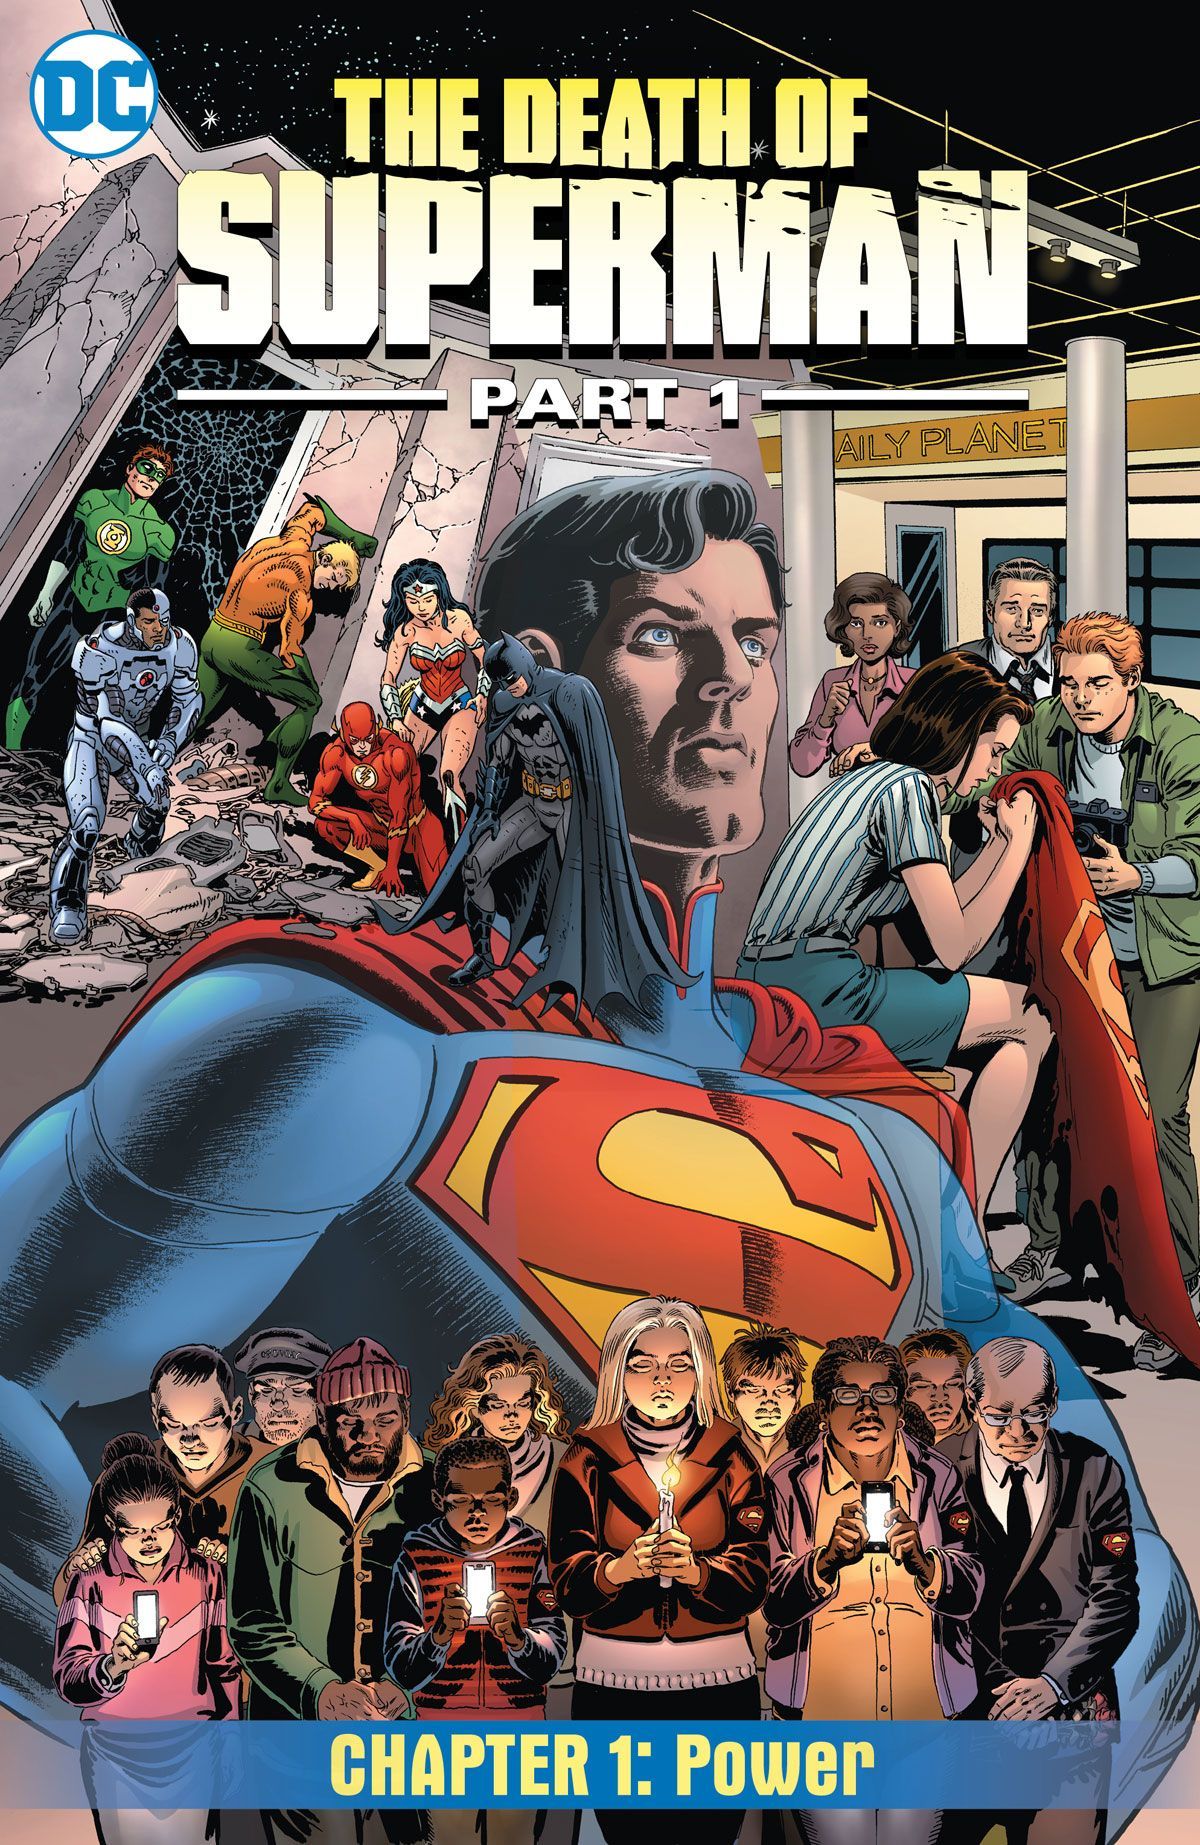 DC keert terug naar The Death of Superman in New Comic